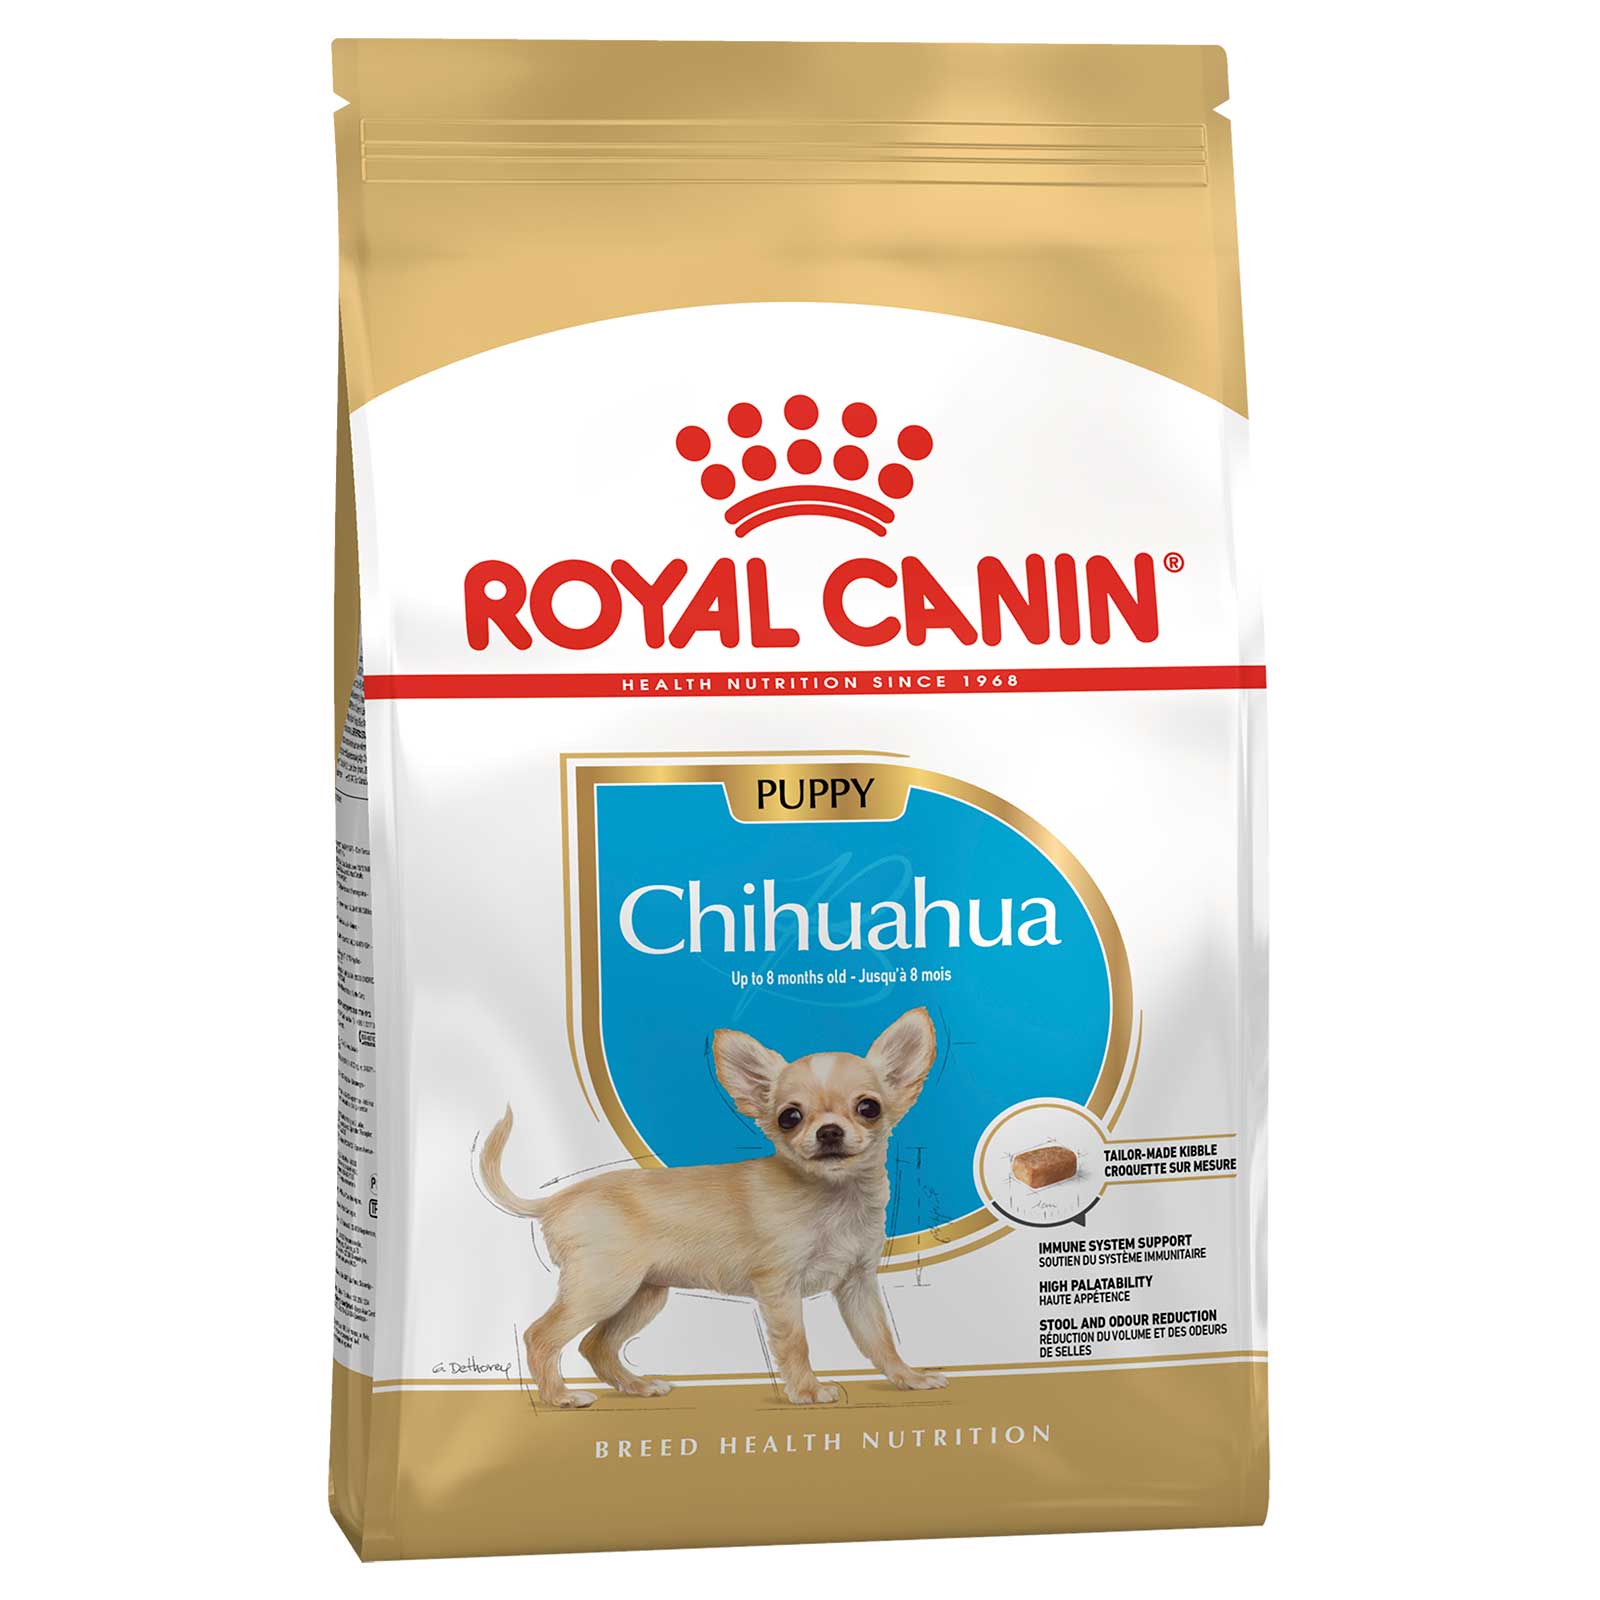 Royal Canin Dog Food Puppy Chihuahua